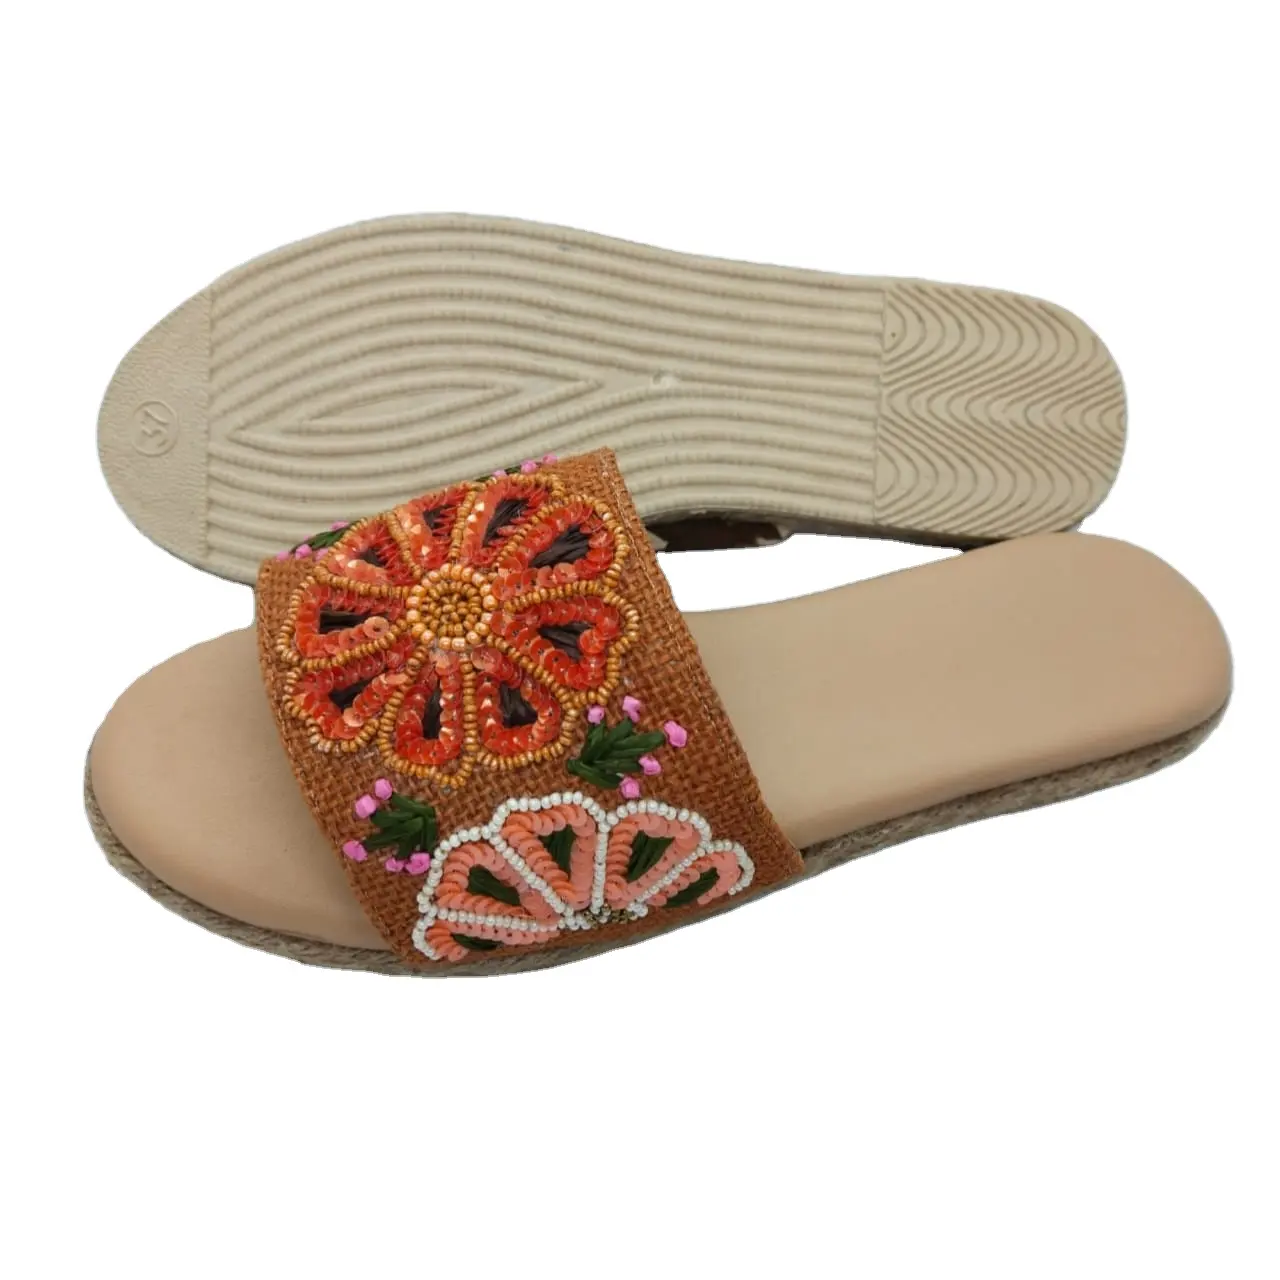 Sandálias espadrille, novas sandálias estilosas com contas de flores originais de design com bela decoração de raffiia em cores diferentes